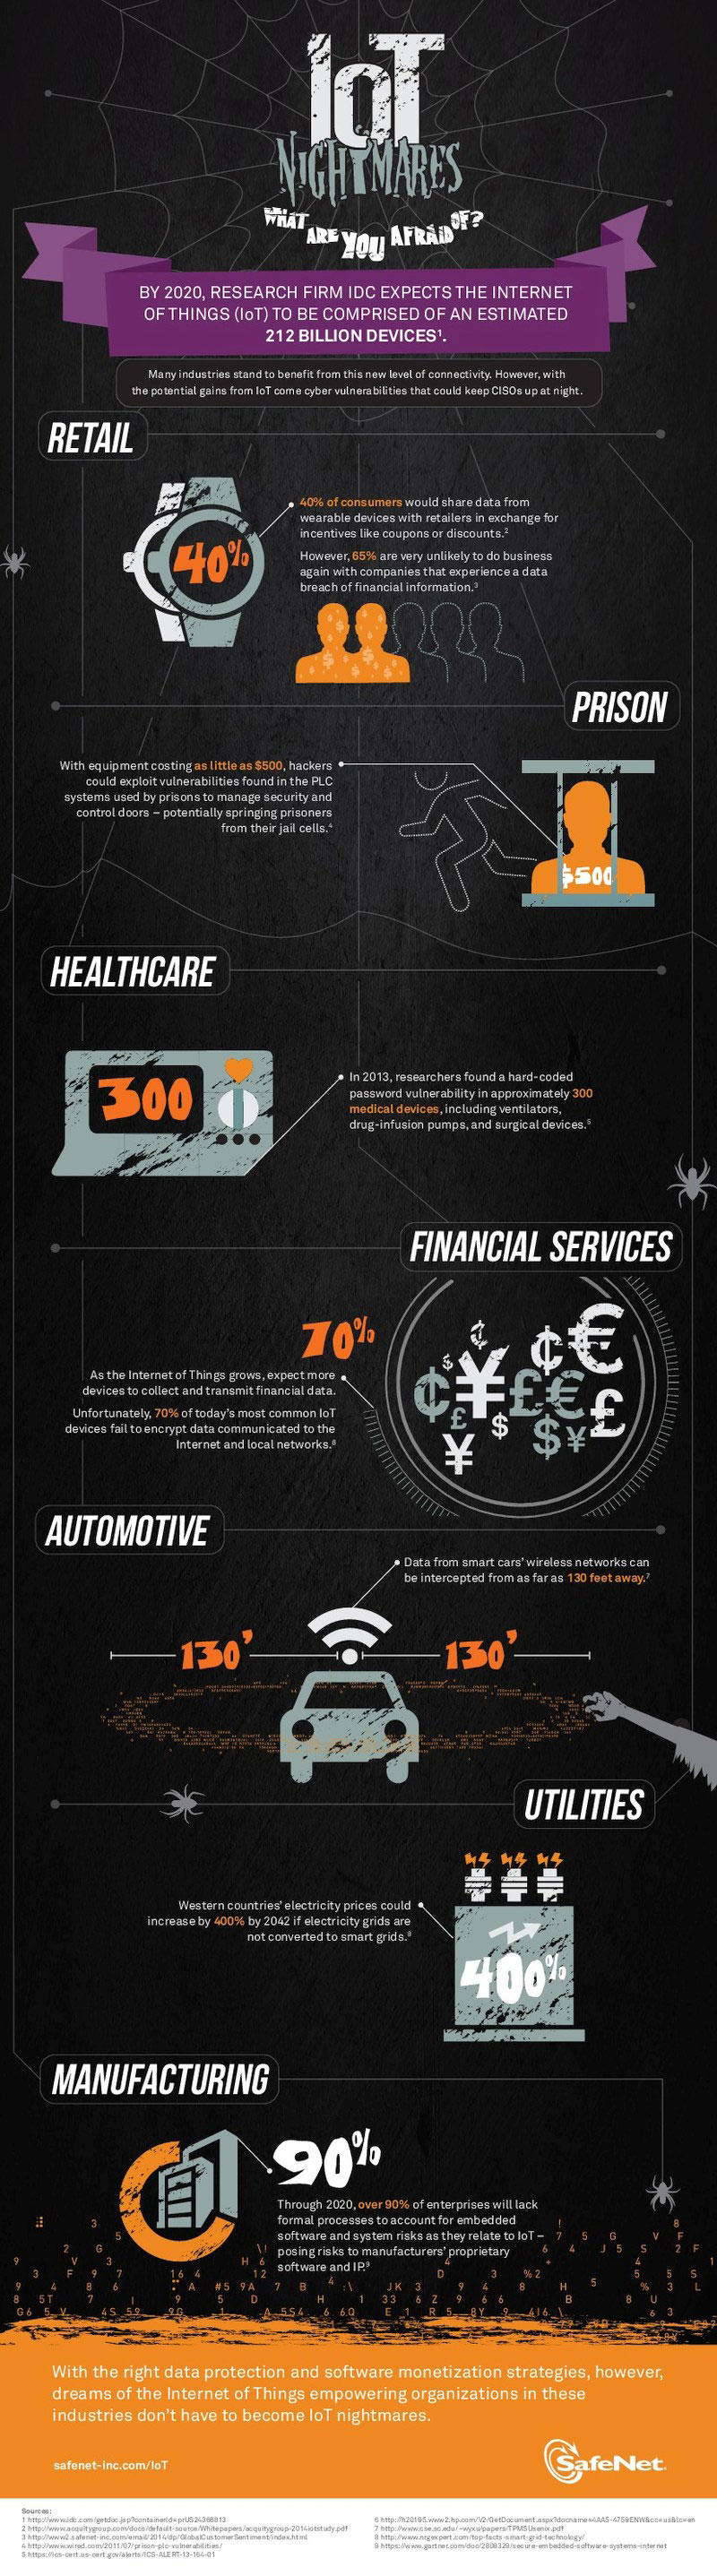 infografik safenet IoT Internet der Dinge